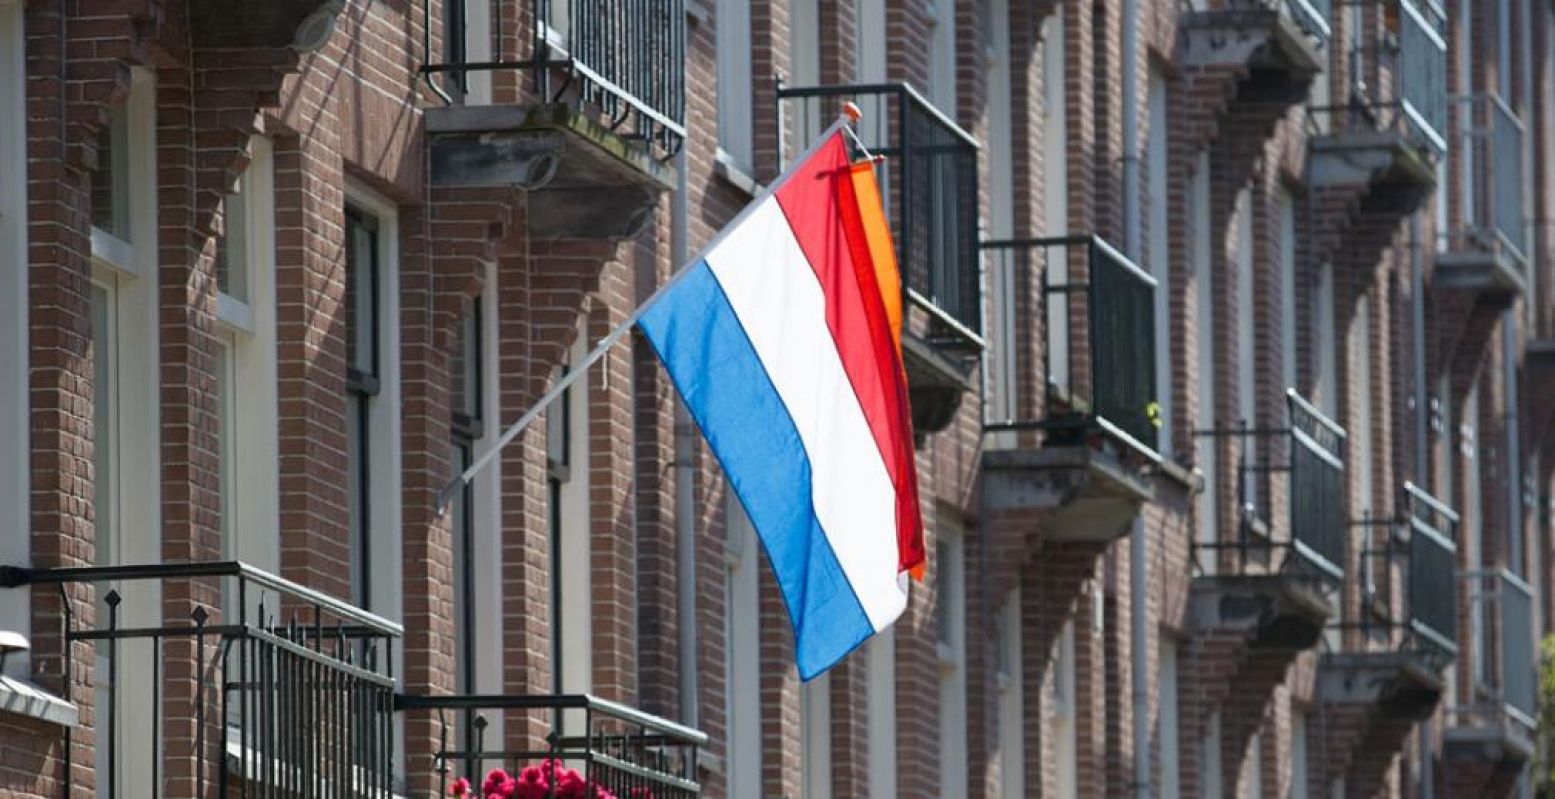 Op 27 april kan de vlag weer uit voor de verjaardag van onze Koning. Foto:  Michael de Groot  via  Pixabay 